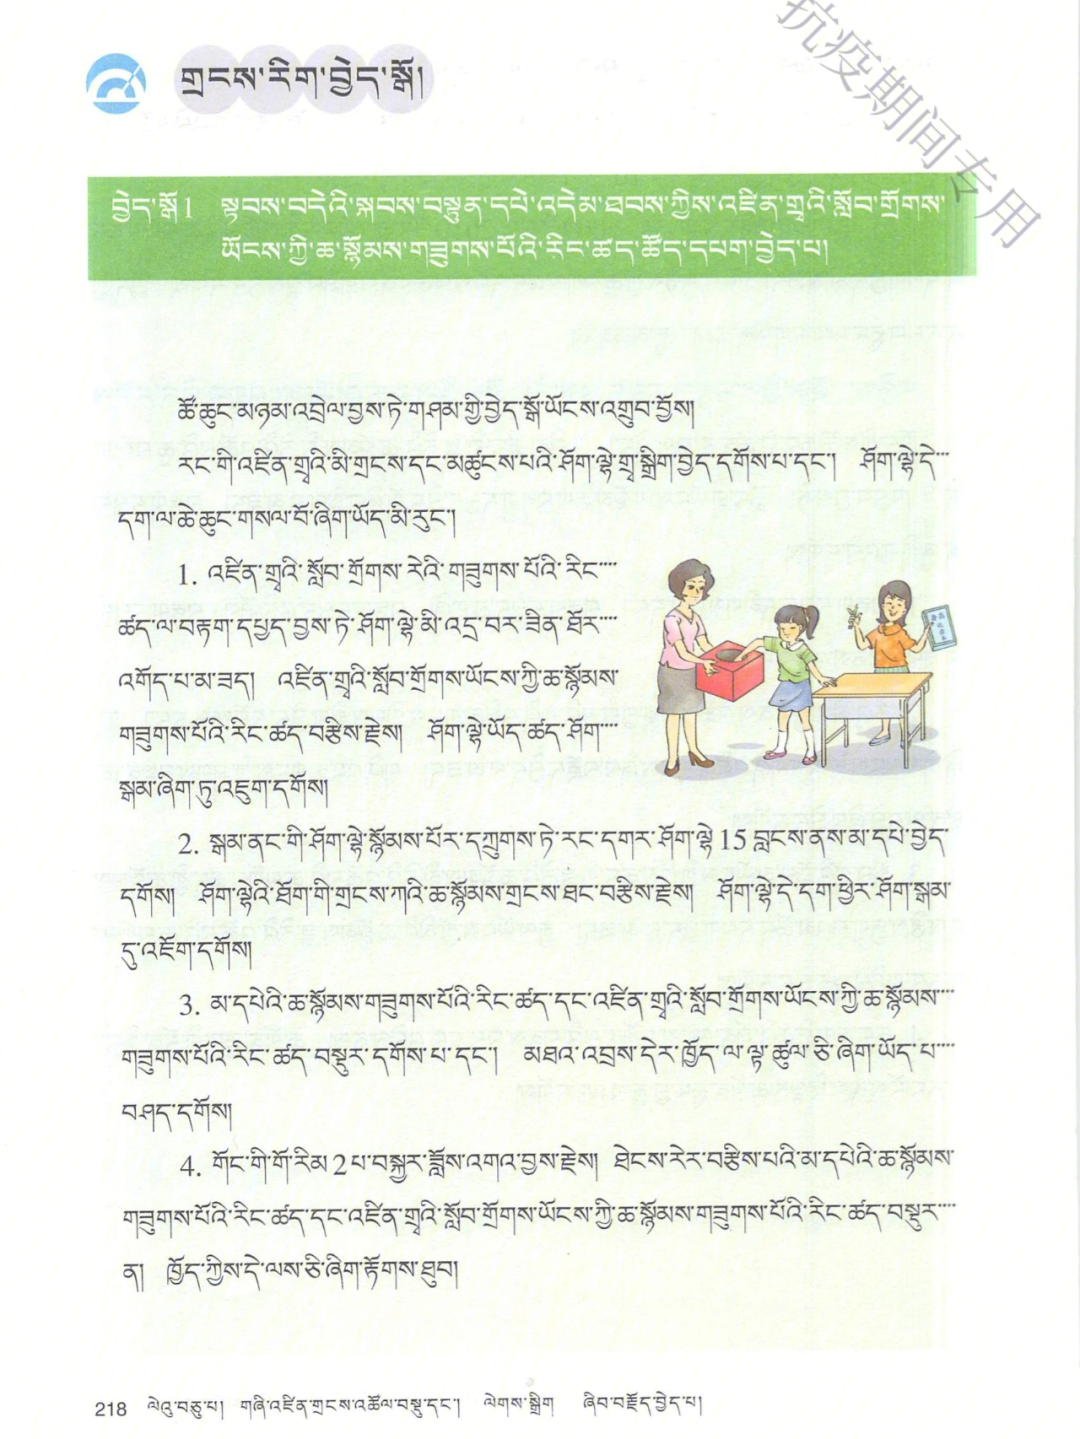 藏文作文藏语版550字图片